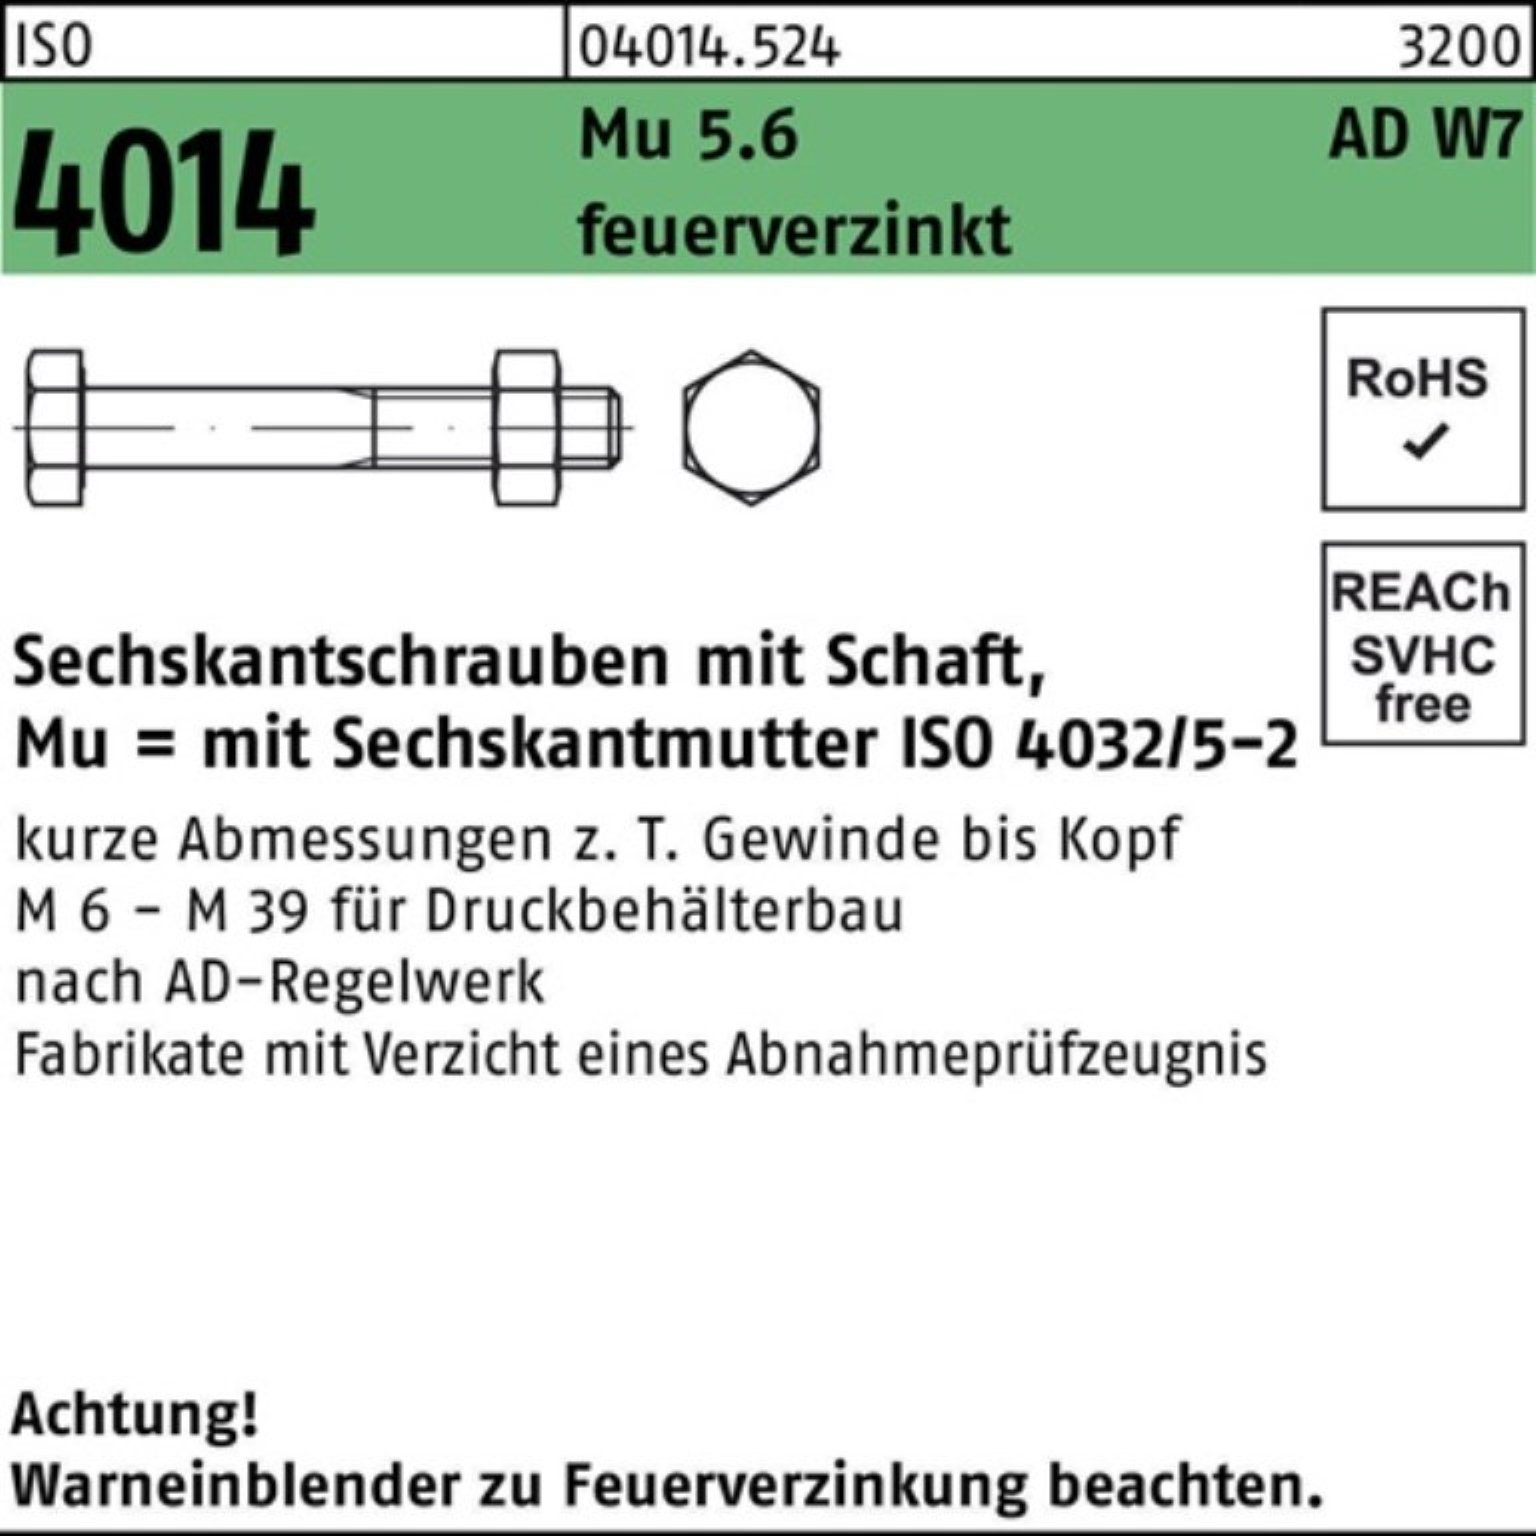 Bufab Sechskantschraube Sechskantschraube Pack feuerve ISO 100er Mu 4014 M20x W7 5.6 80 Schaft